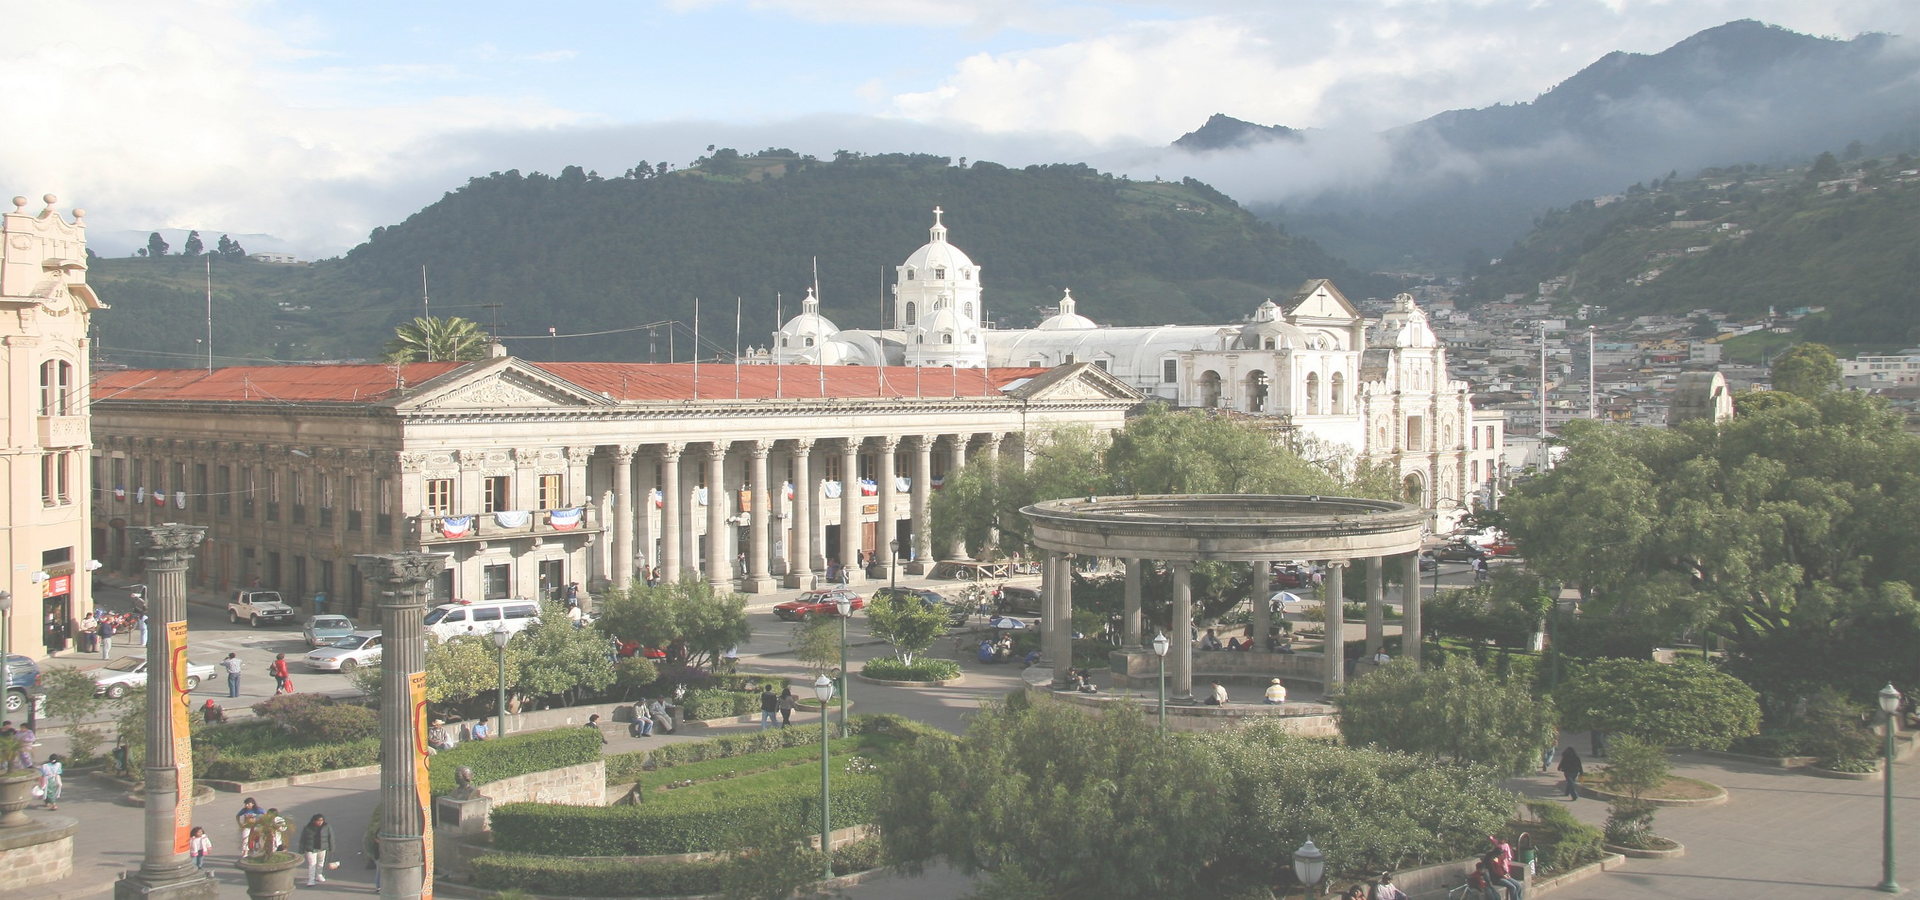 <b>Quetzaltenango, Guatemala</b>